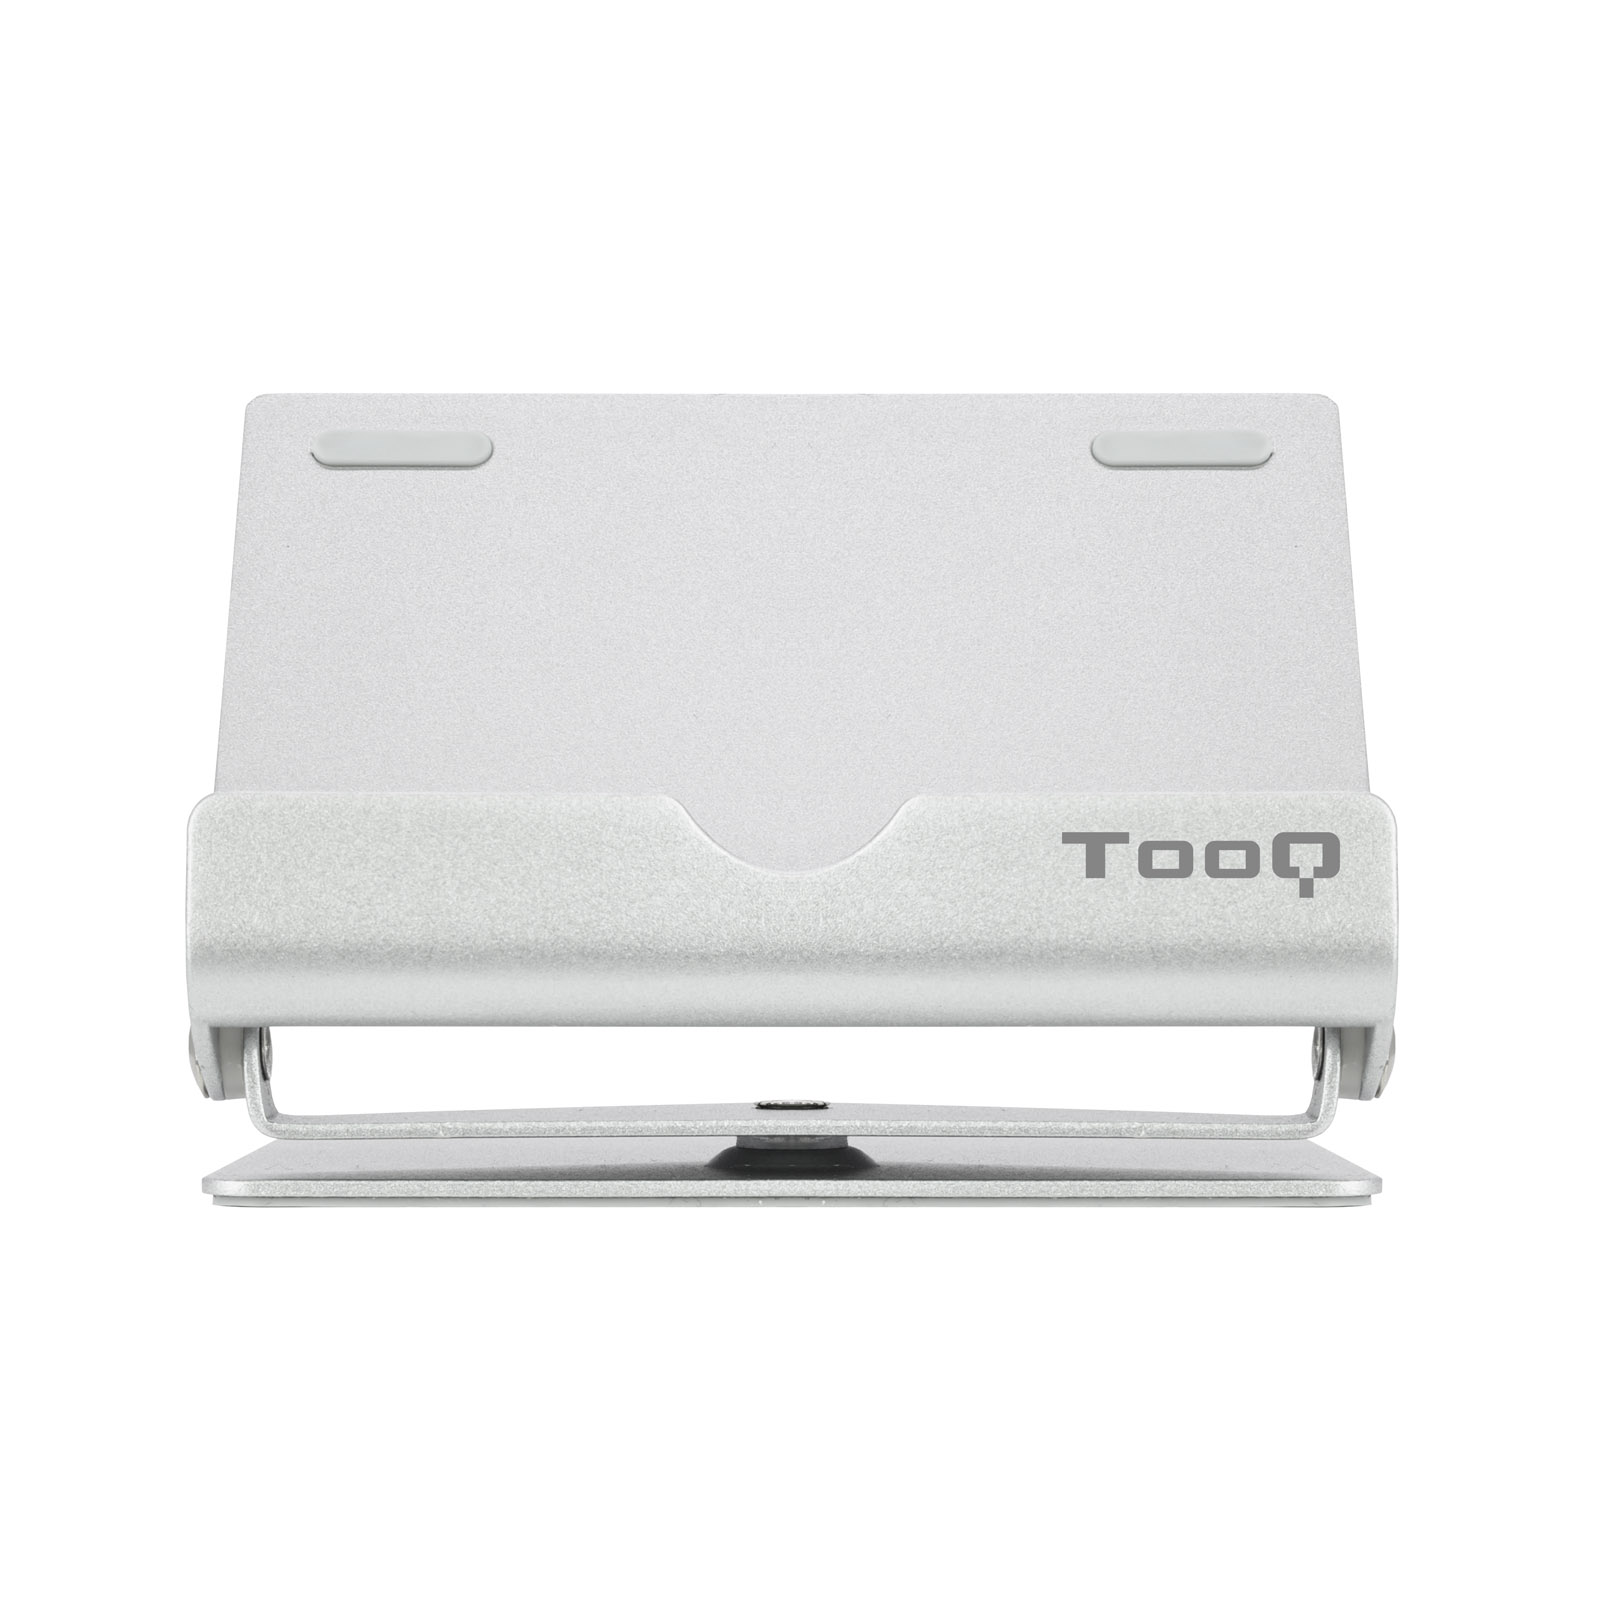 Support de Bureau Tooq pour Tablette jusqu'à 10" - Inclinable et Pivotant - Base Antidérapante - Couleur Argent